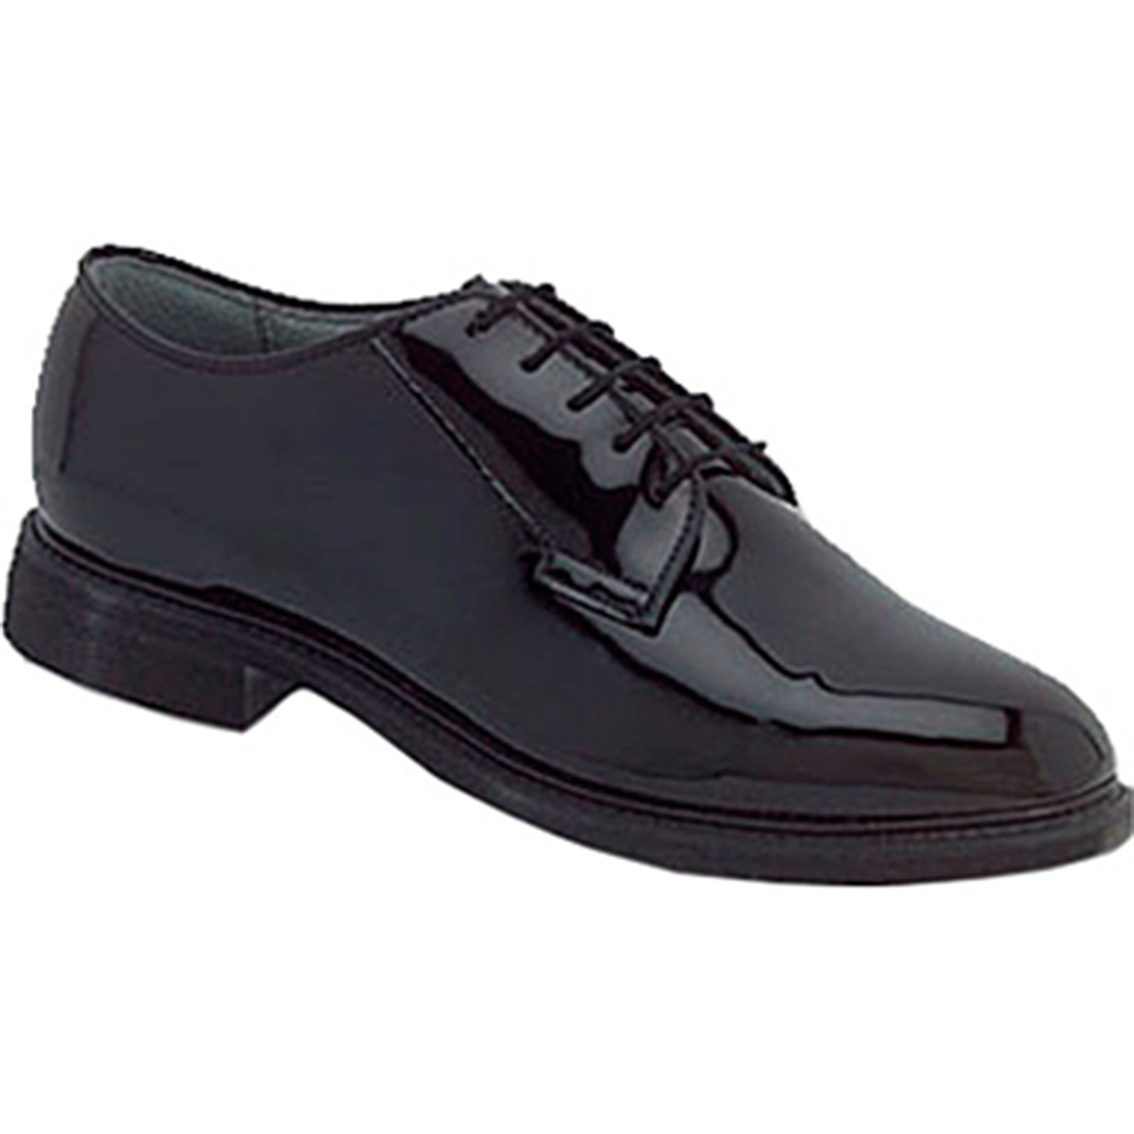 black oxford dress shoes